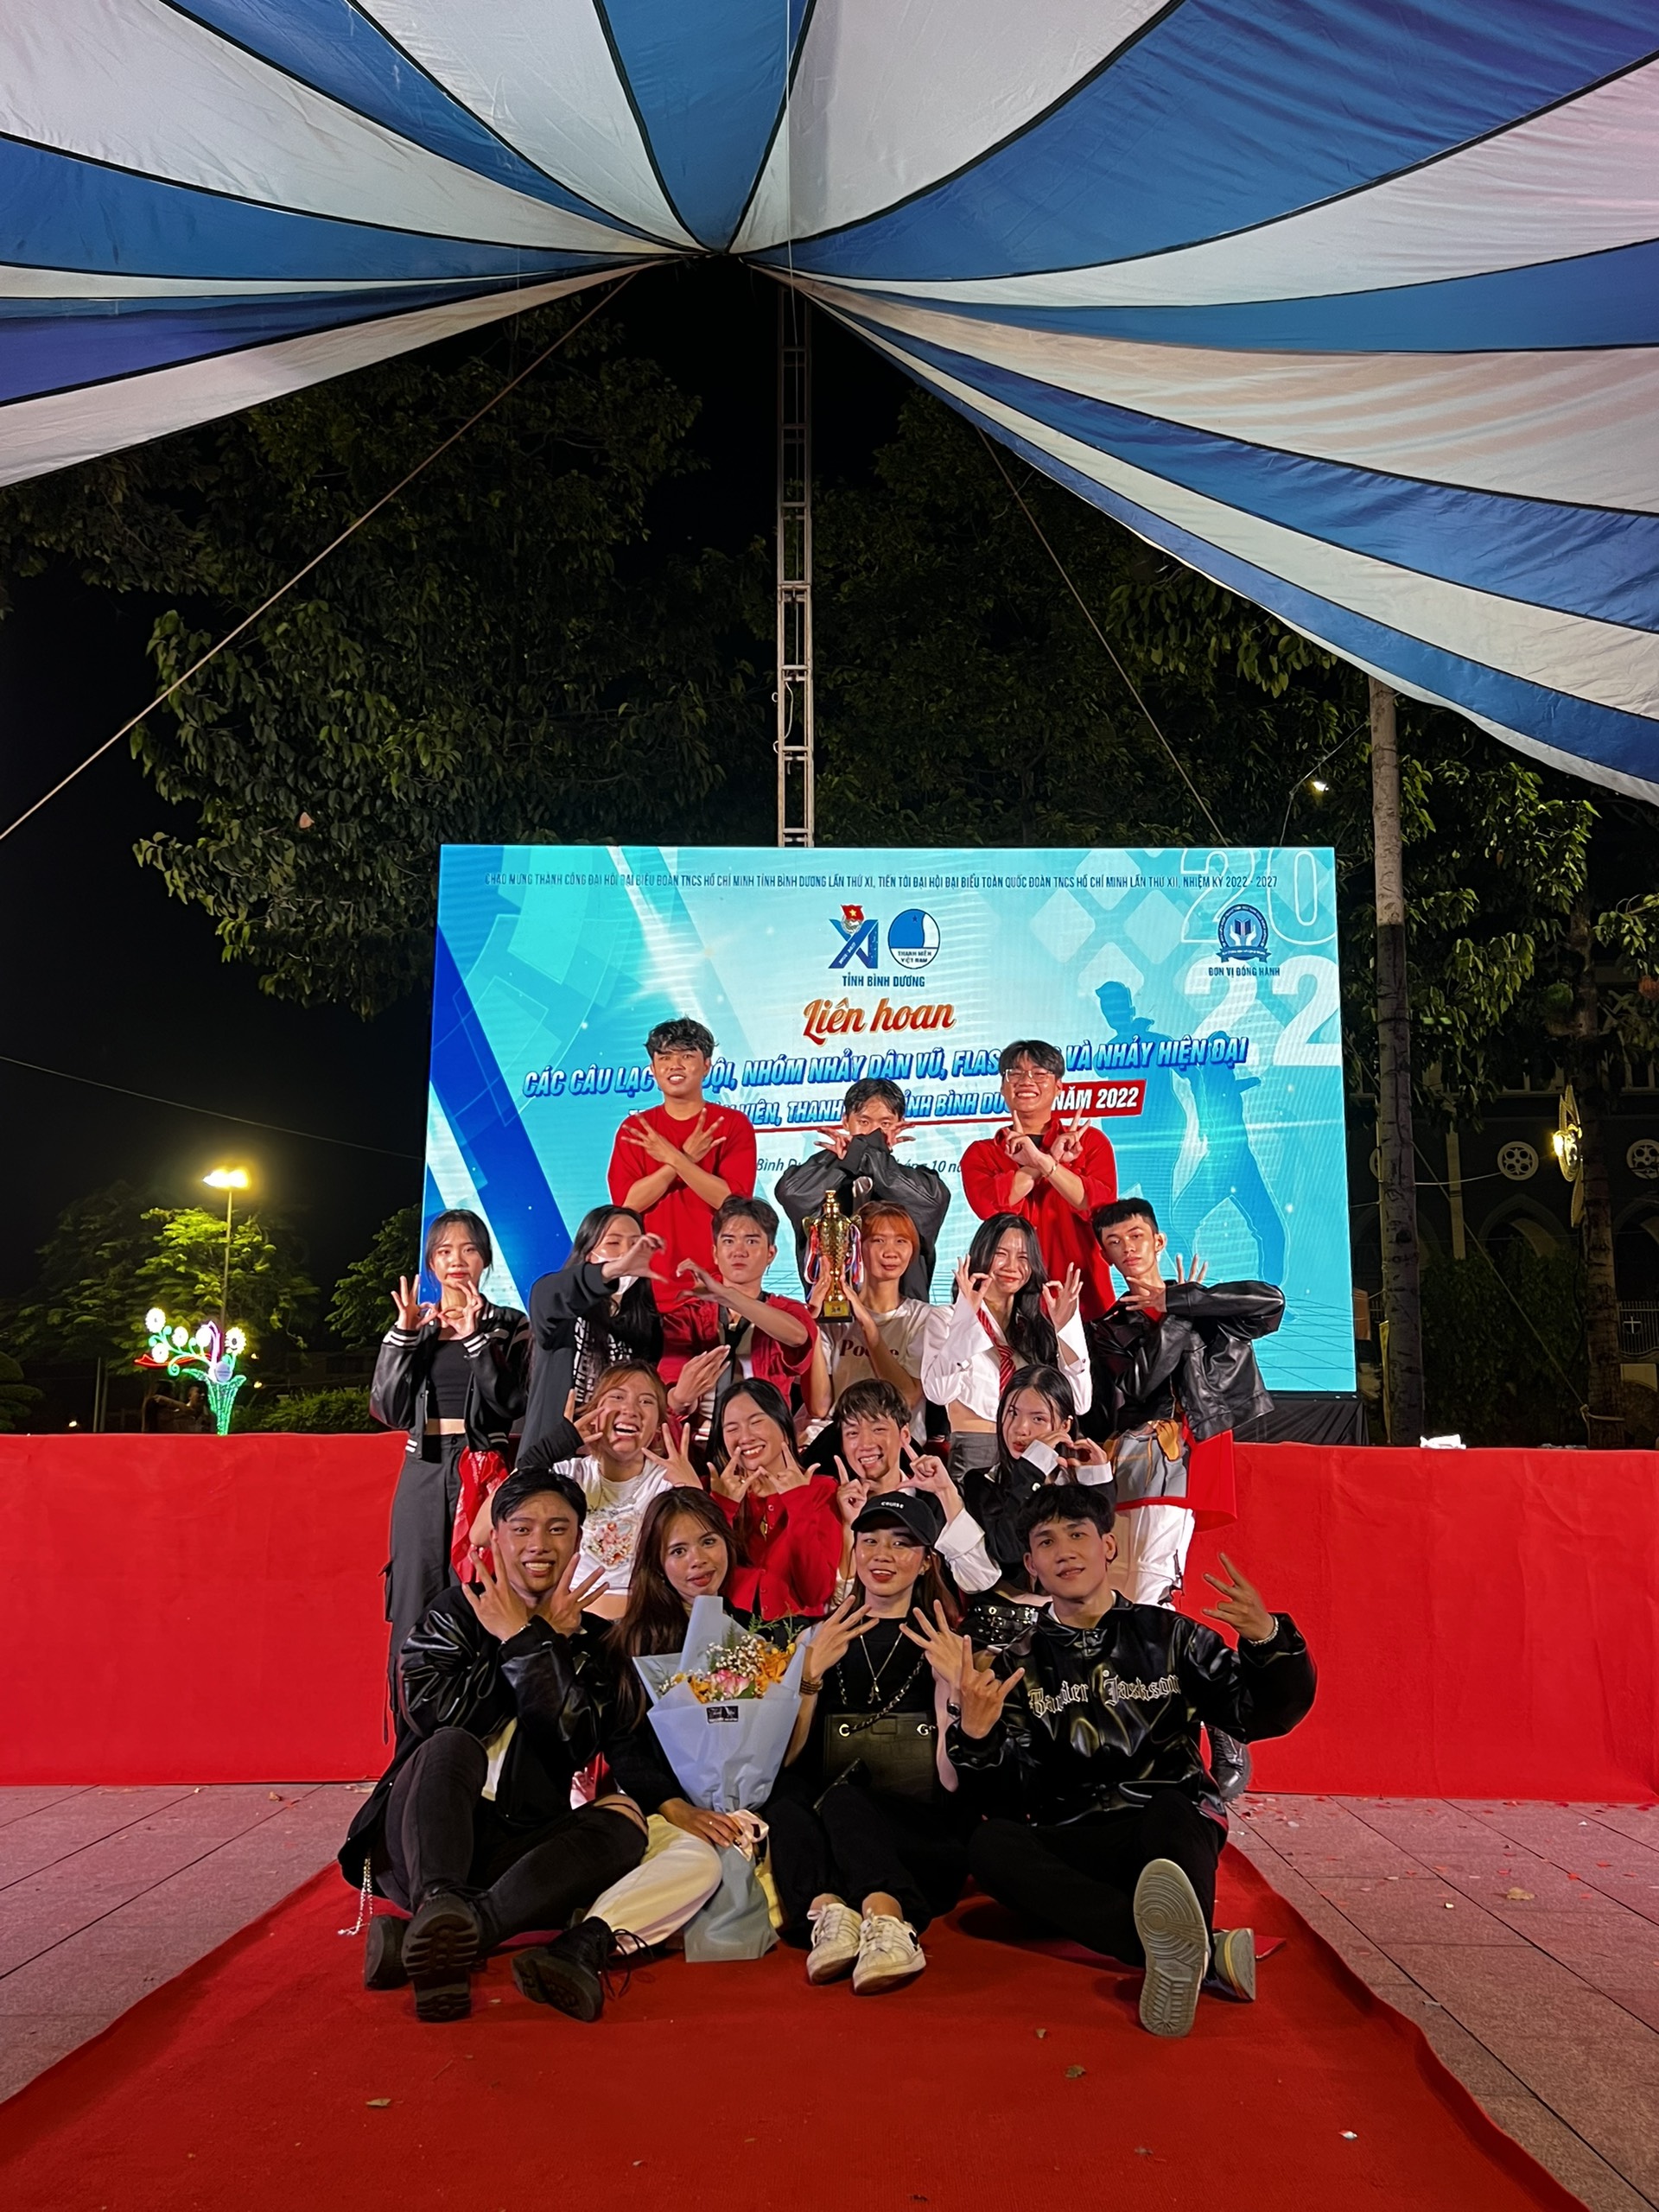 Chúc mừng đội nhảy CLB Văn nghệ trường Đại học Thủ Dầu Một - Sailing36 dance team đã xuất sắc giành giải đặc biệt tại Liên hoan các CLB, Đội, Nhóm nhảy dân vũ, flashmob và nhảy hiện đại năm 2022